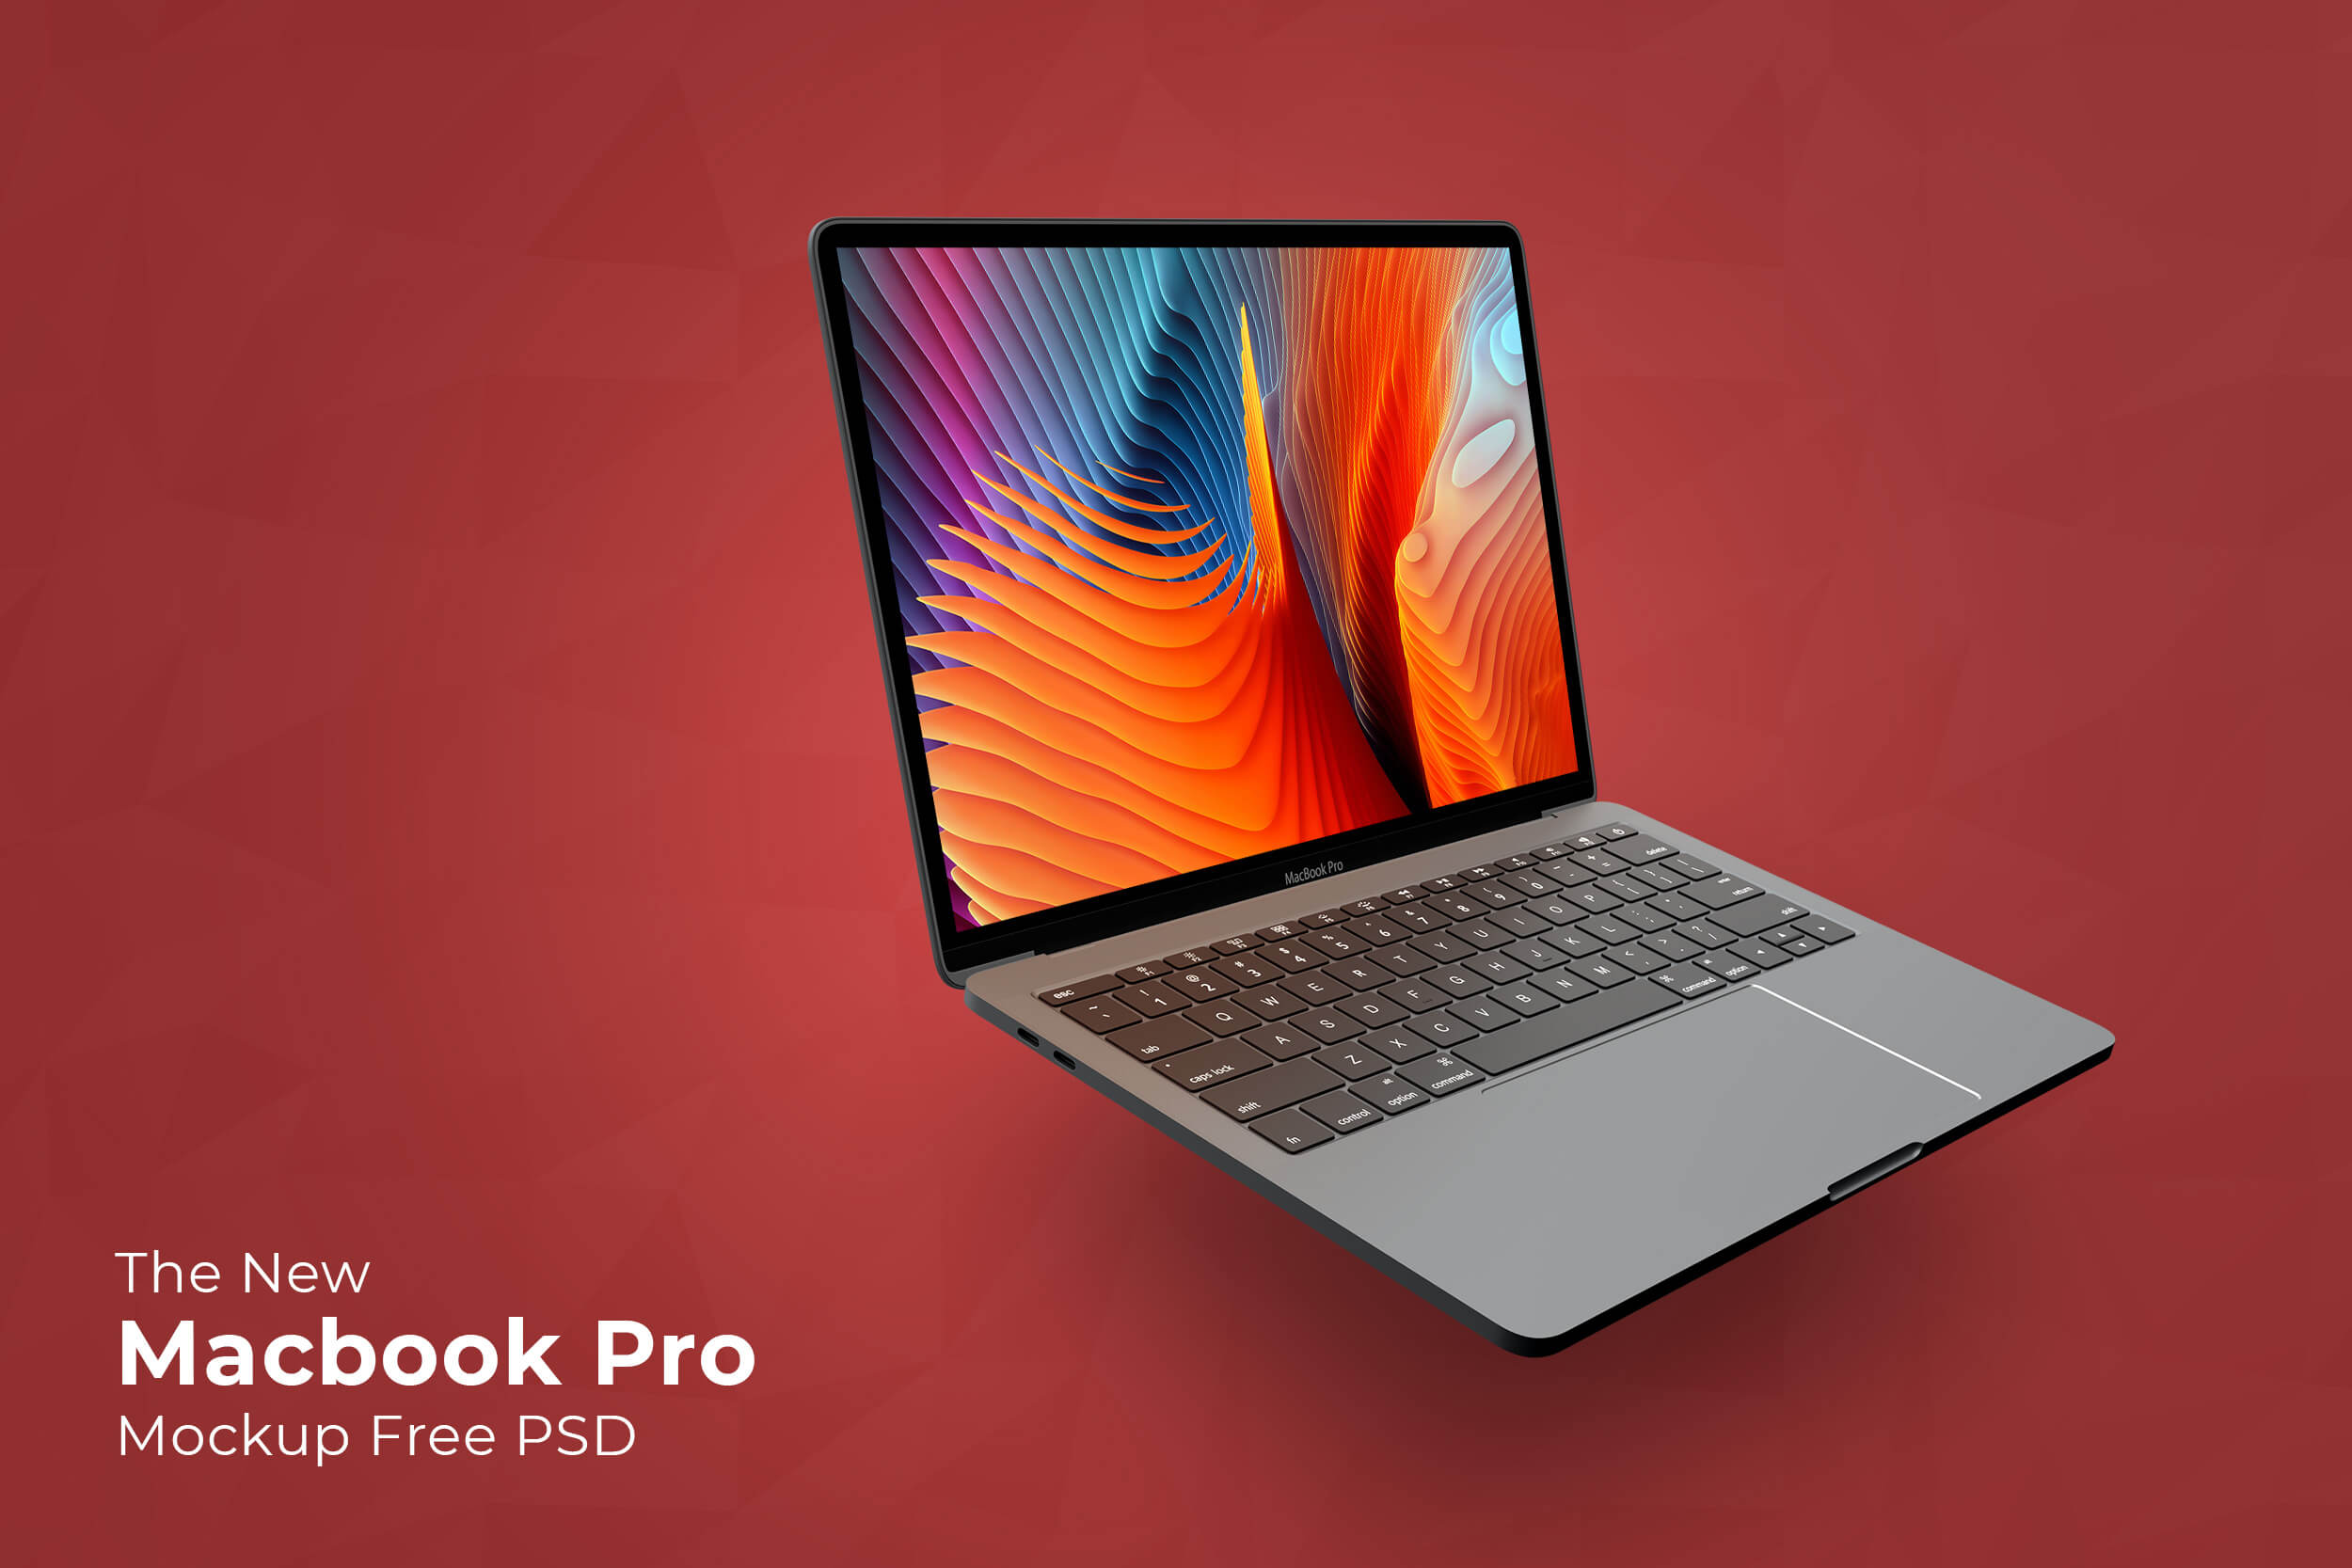 macbook pro, macbook pro mockup, mockup psd, macbook pro mockup psd, macbook pro free mockup, macbook mockup, macbook psd, primepsd, prime psd, psdfreebie, premium macbook mockup, premium free macbook mockup